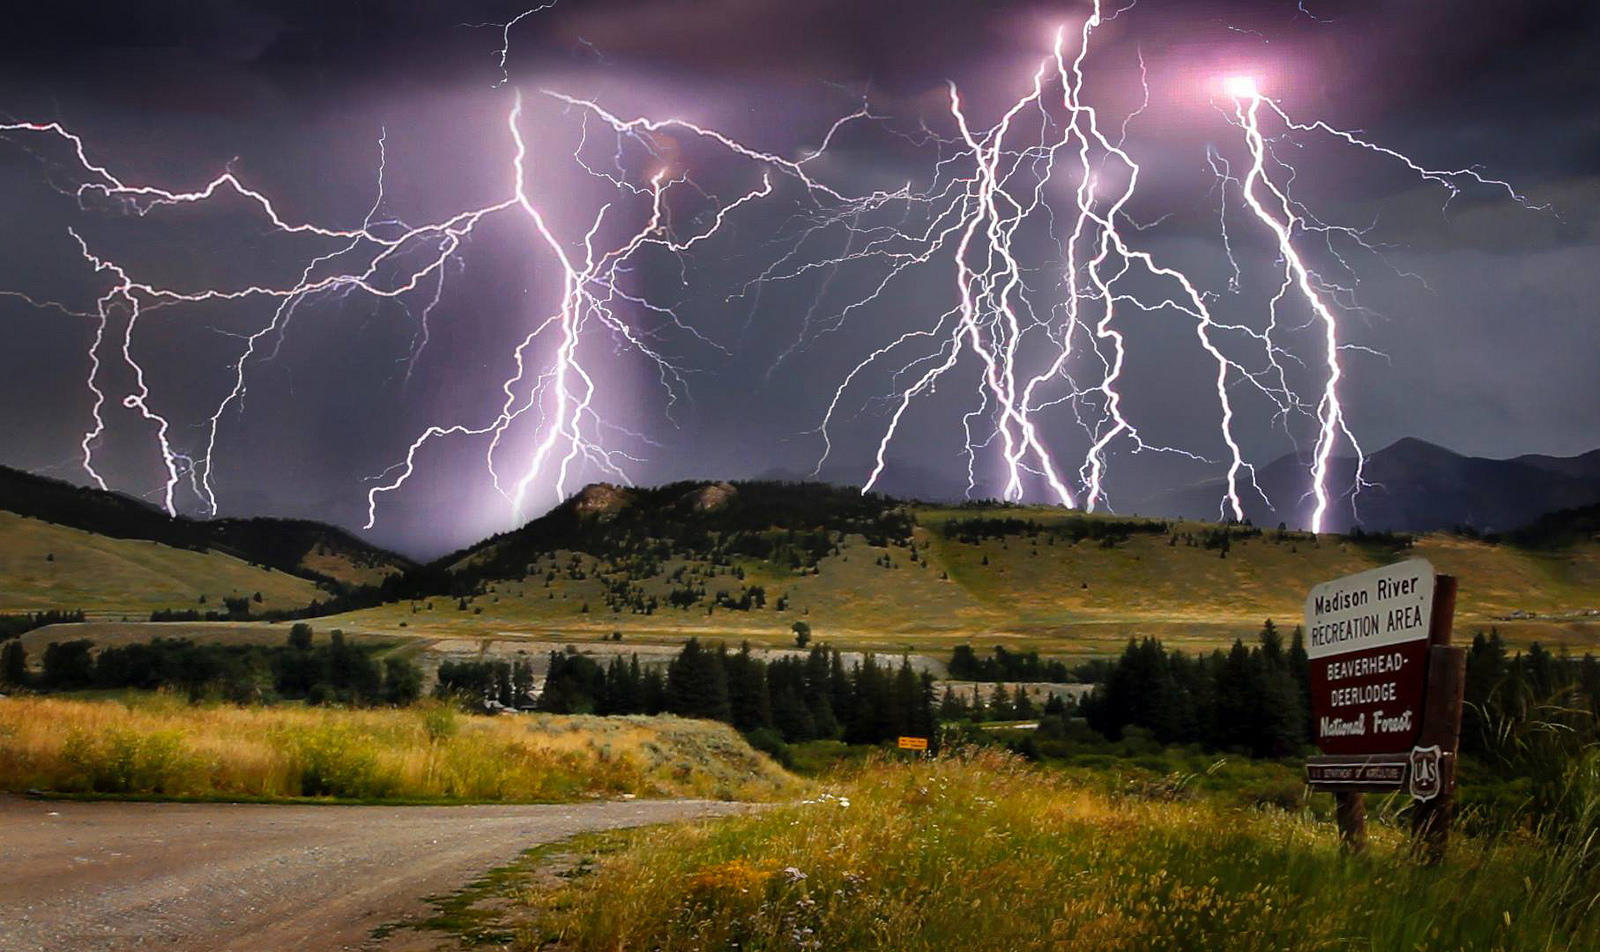 Lightning storm over Deerlodge National
Forest